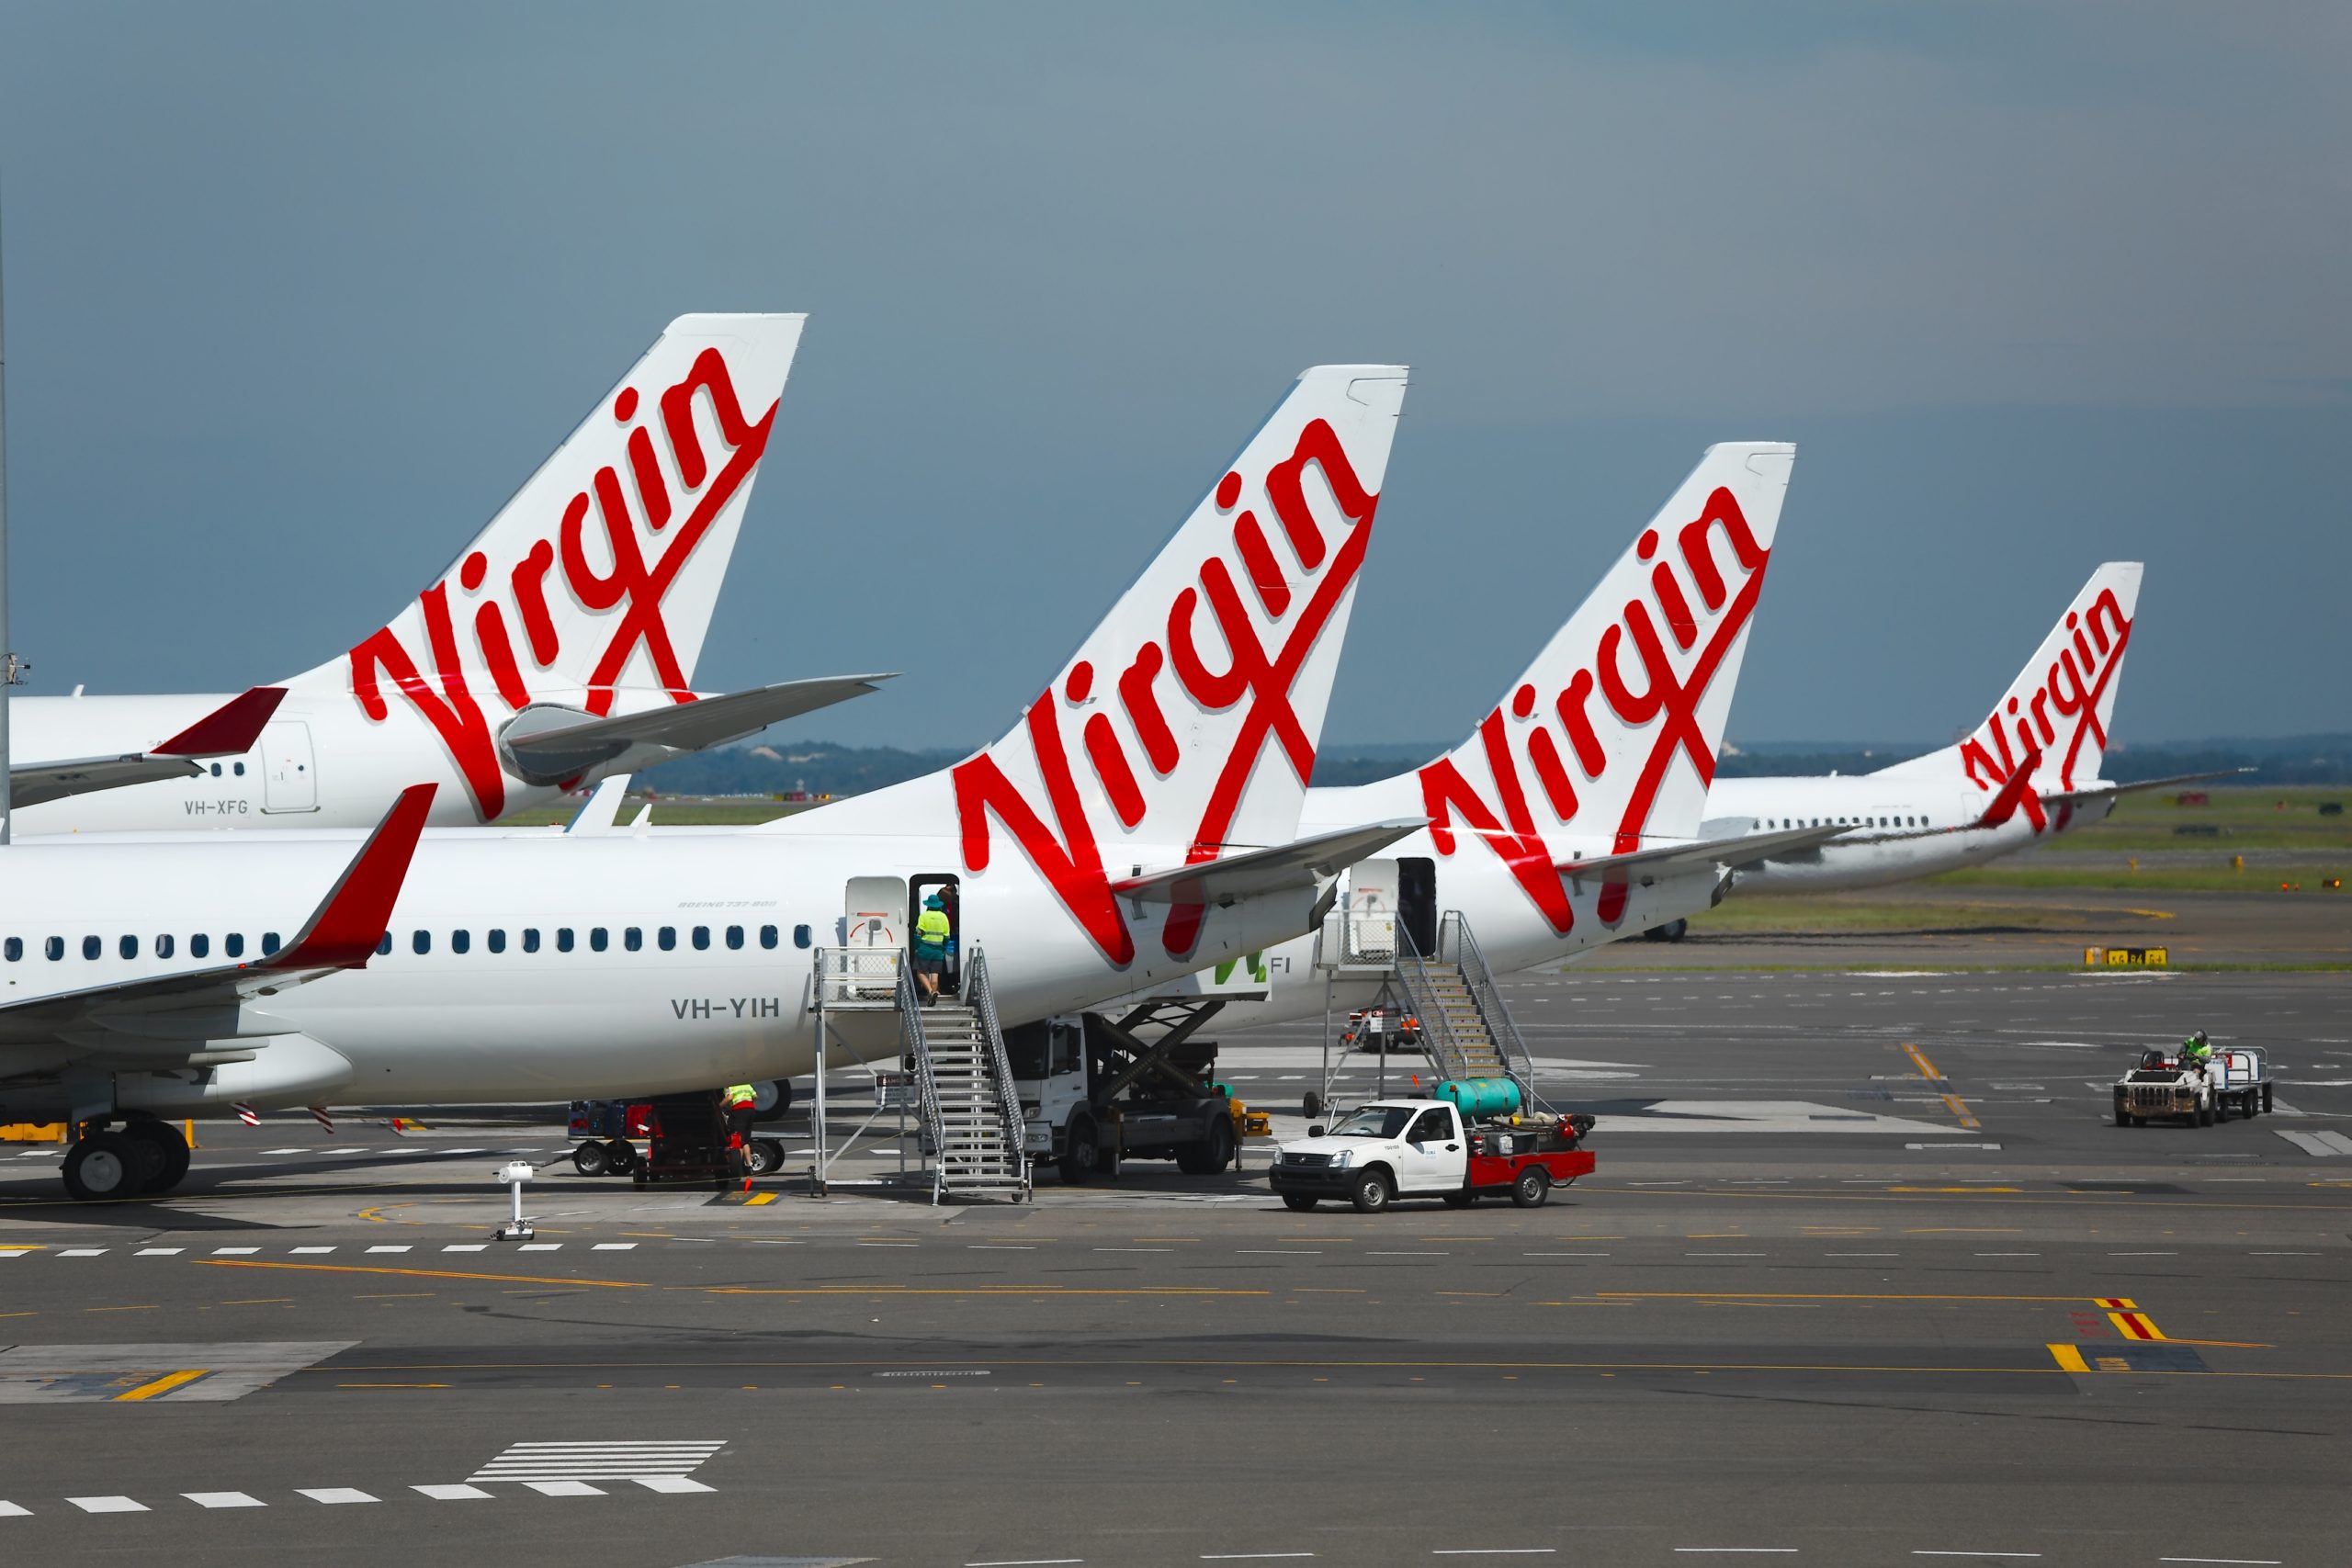 Virgin Airline Australia Air Freight